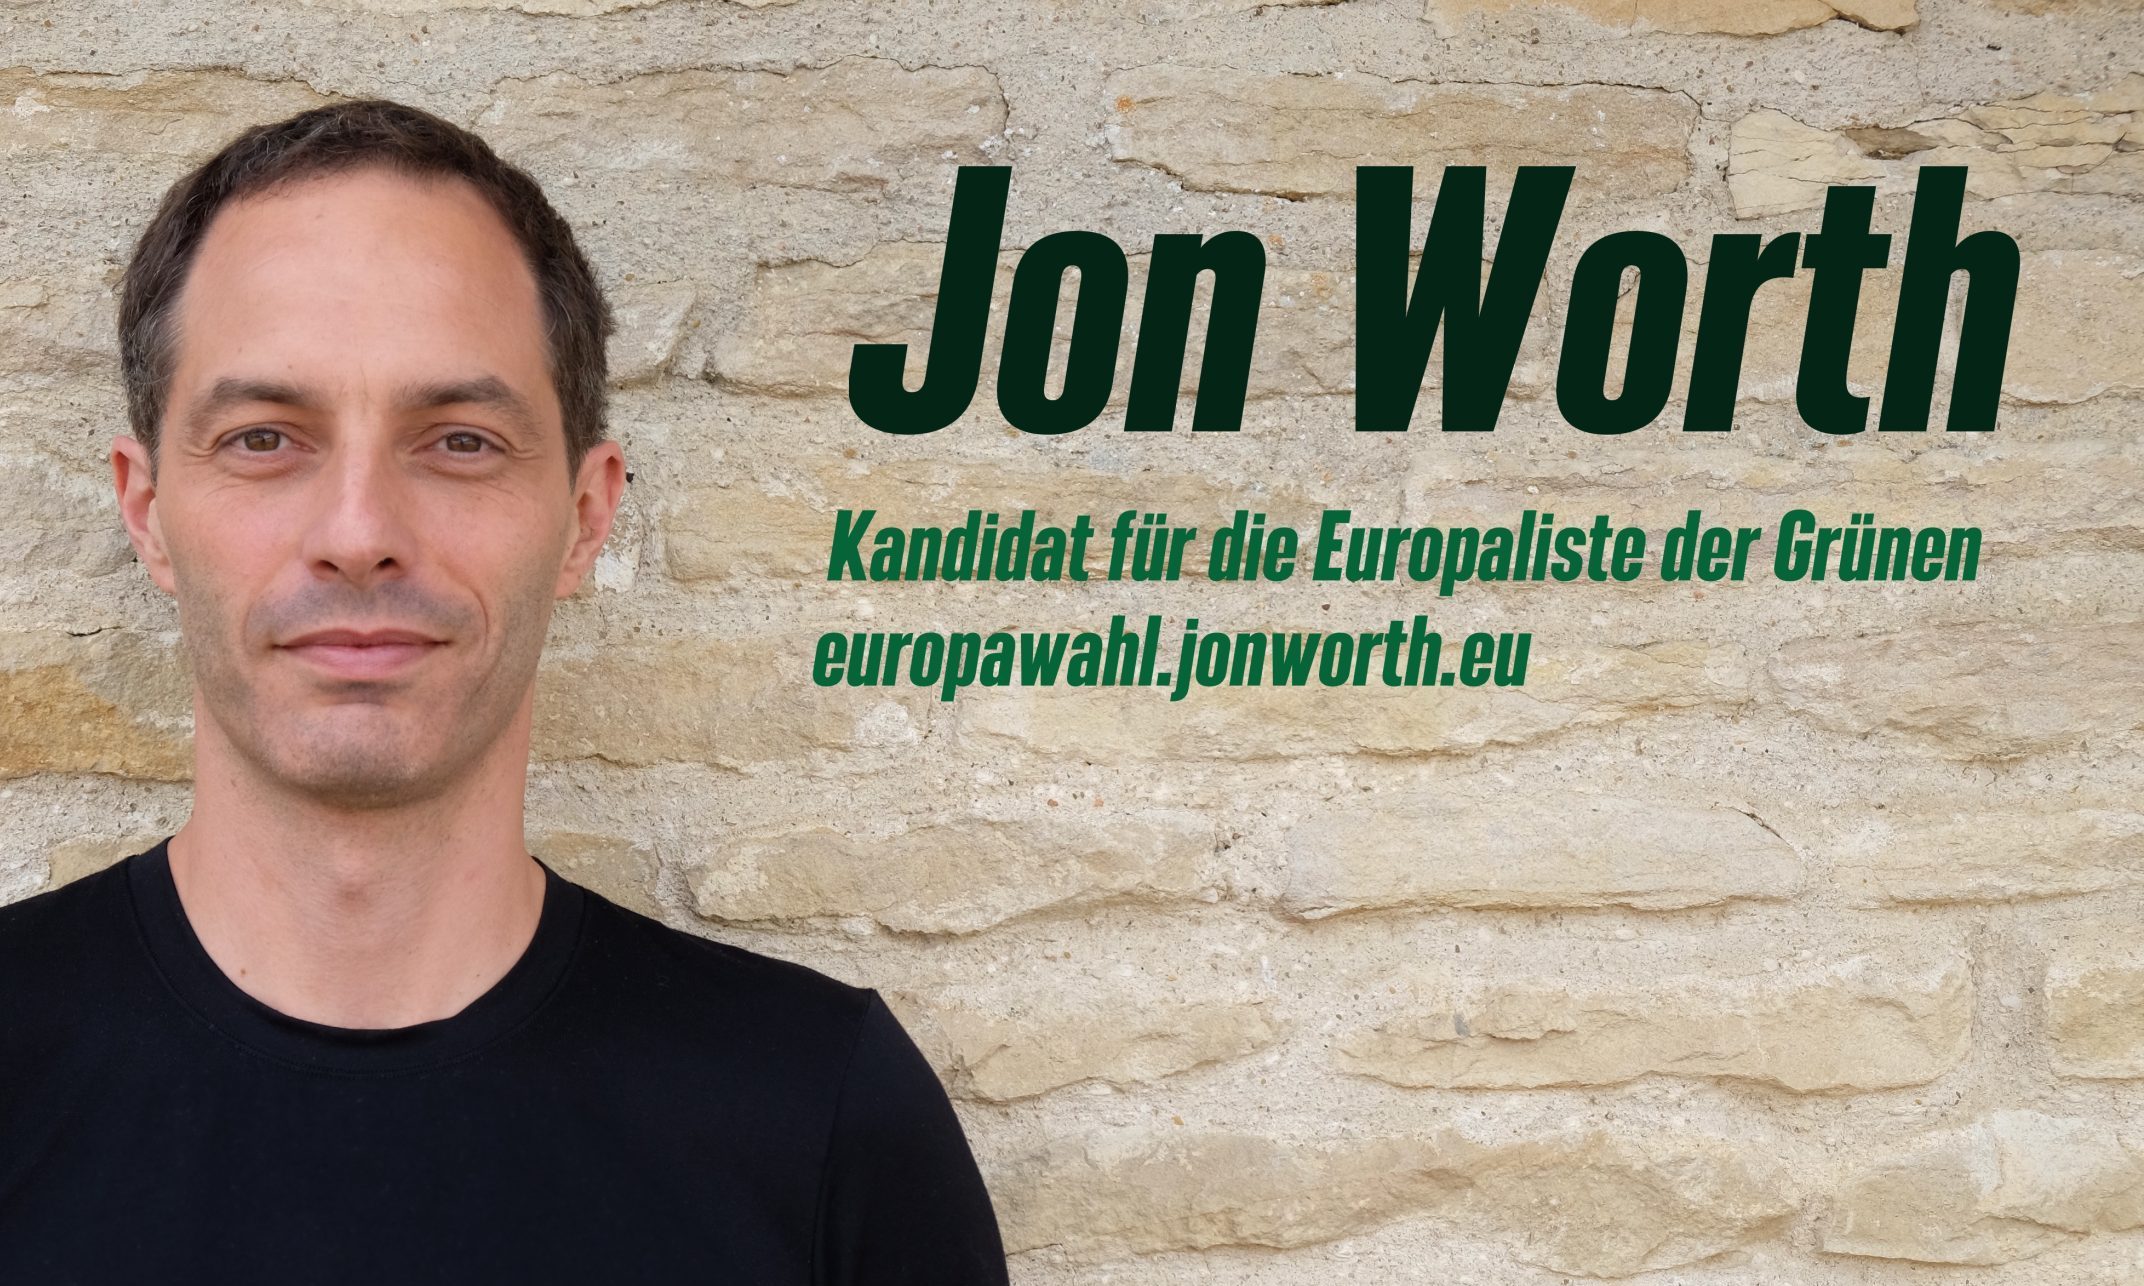 Jon Worth - Kandidat für die Europaliste der Grünen